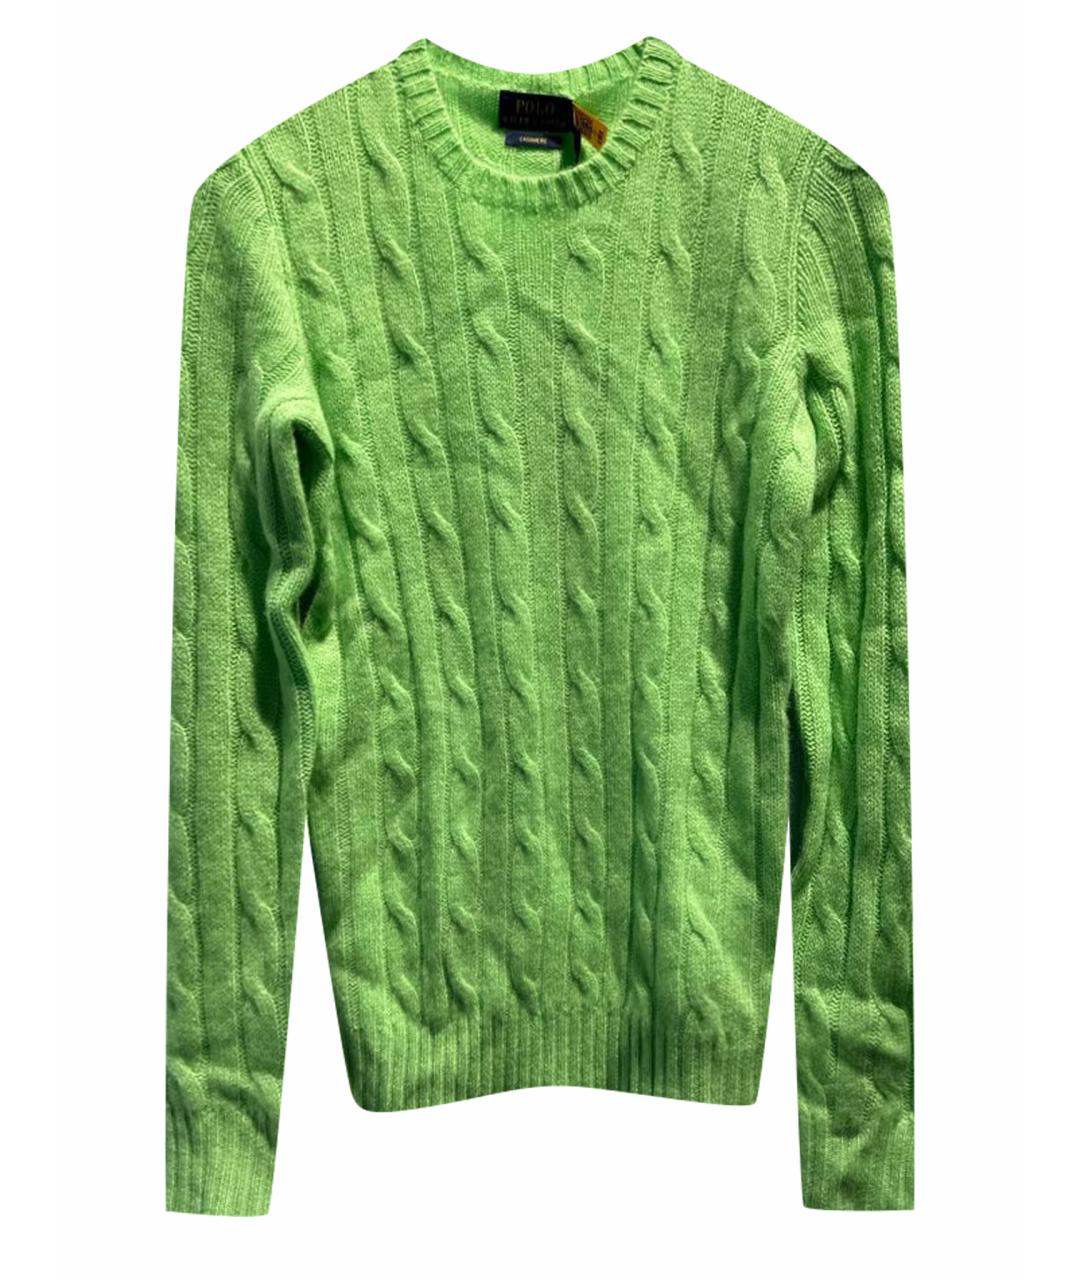 POLO RALPH LAUREN Салатовый кашемировый джемпер / свитер, фото 1